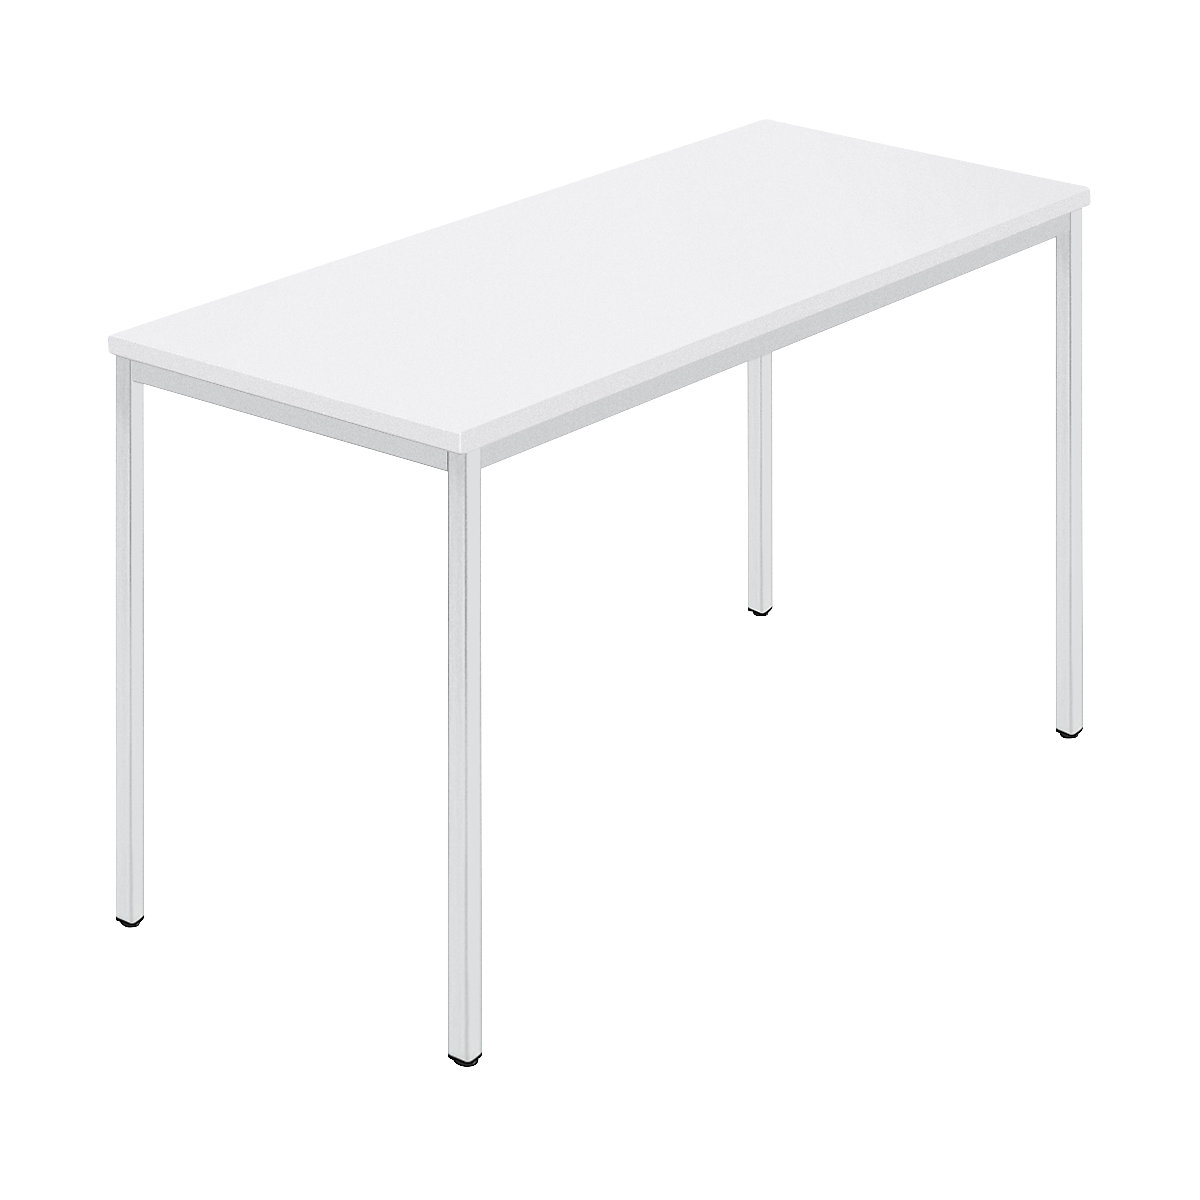 Table rectangulaire, tube carré plastifié, l x p 1200 x 600 mm, blanc / gris-8